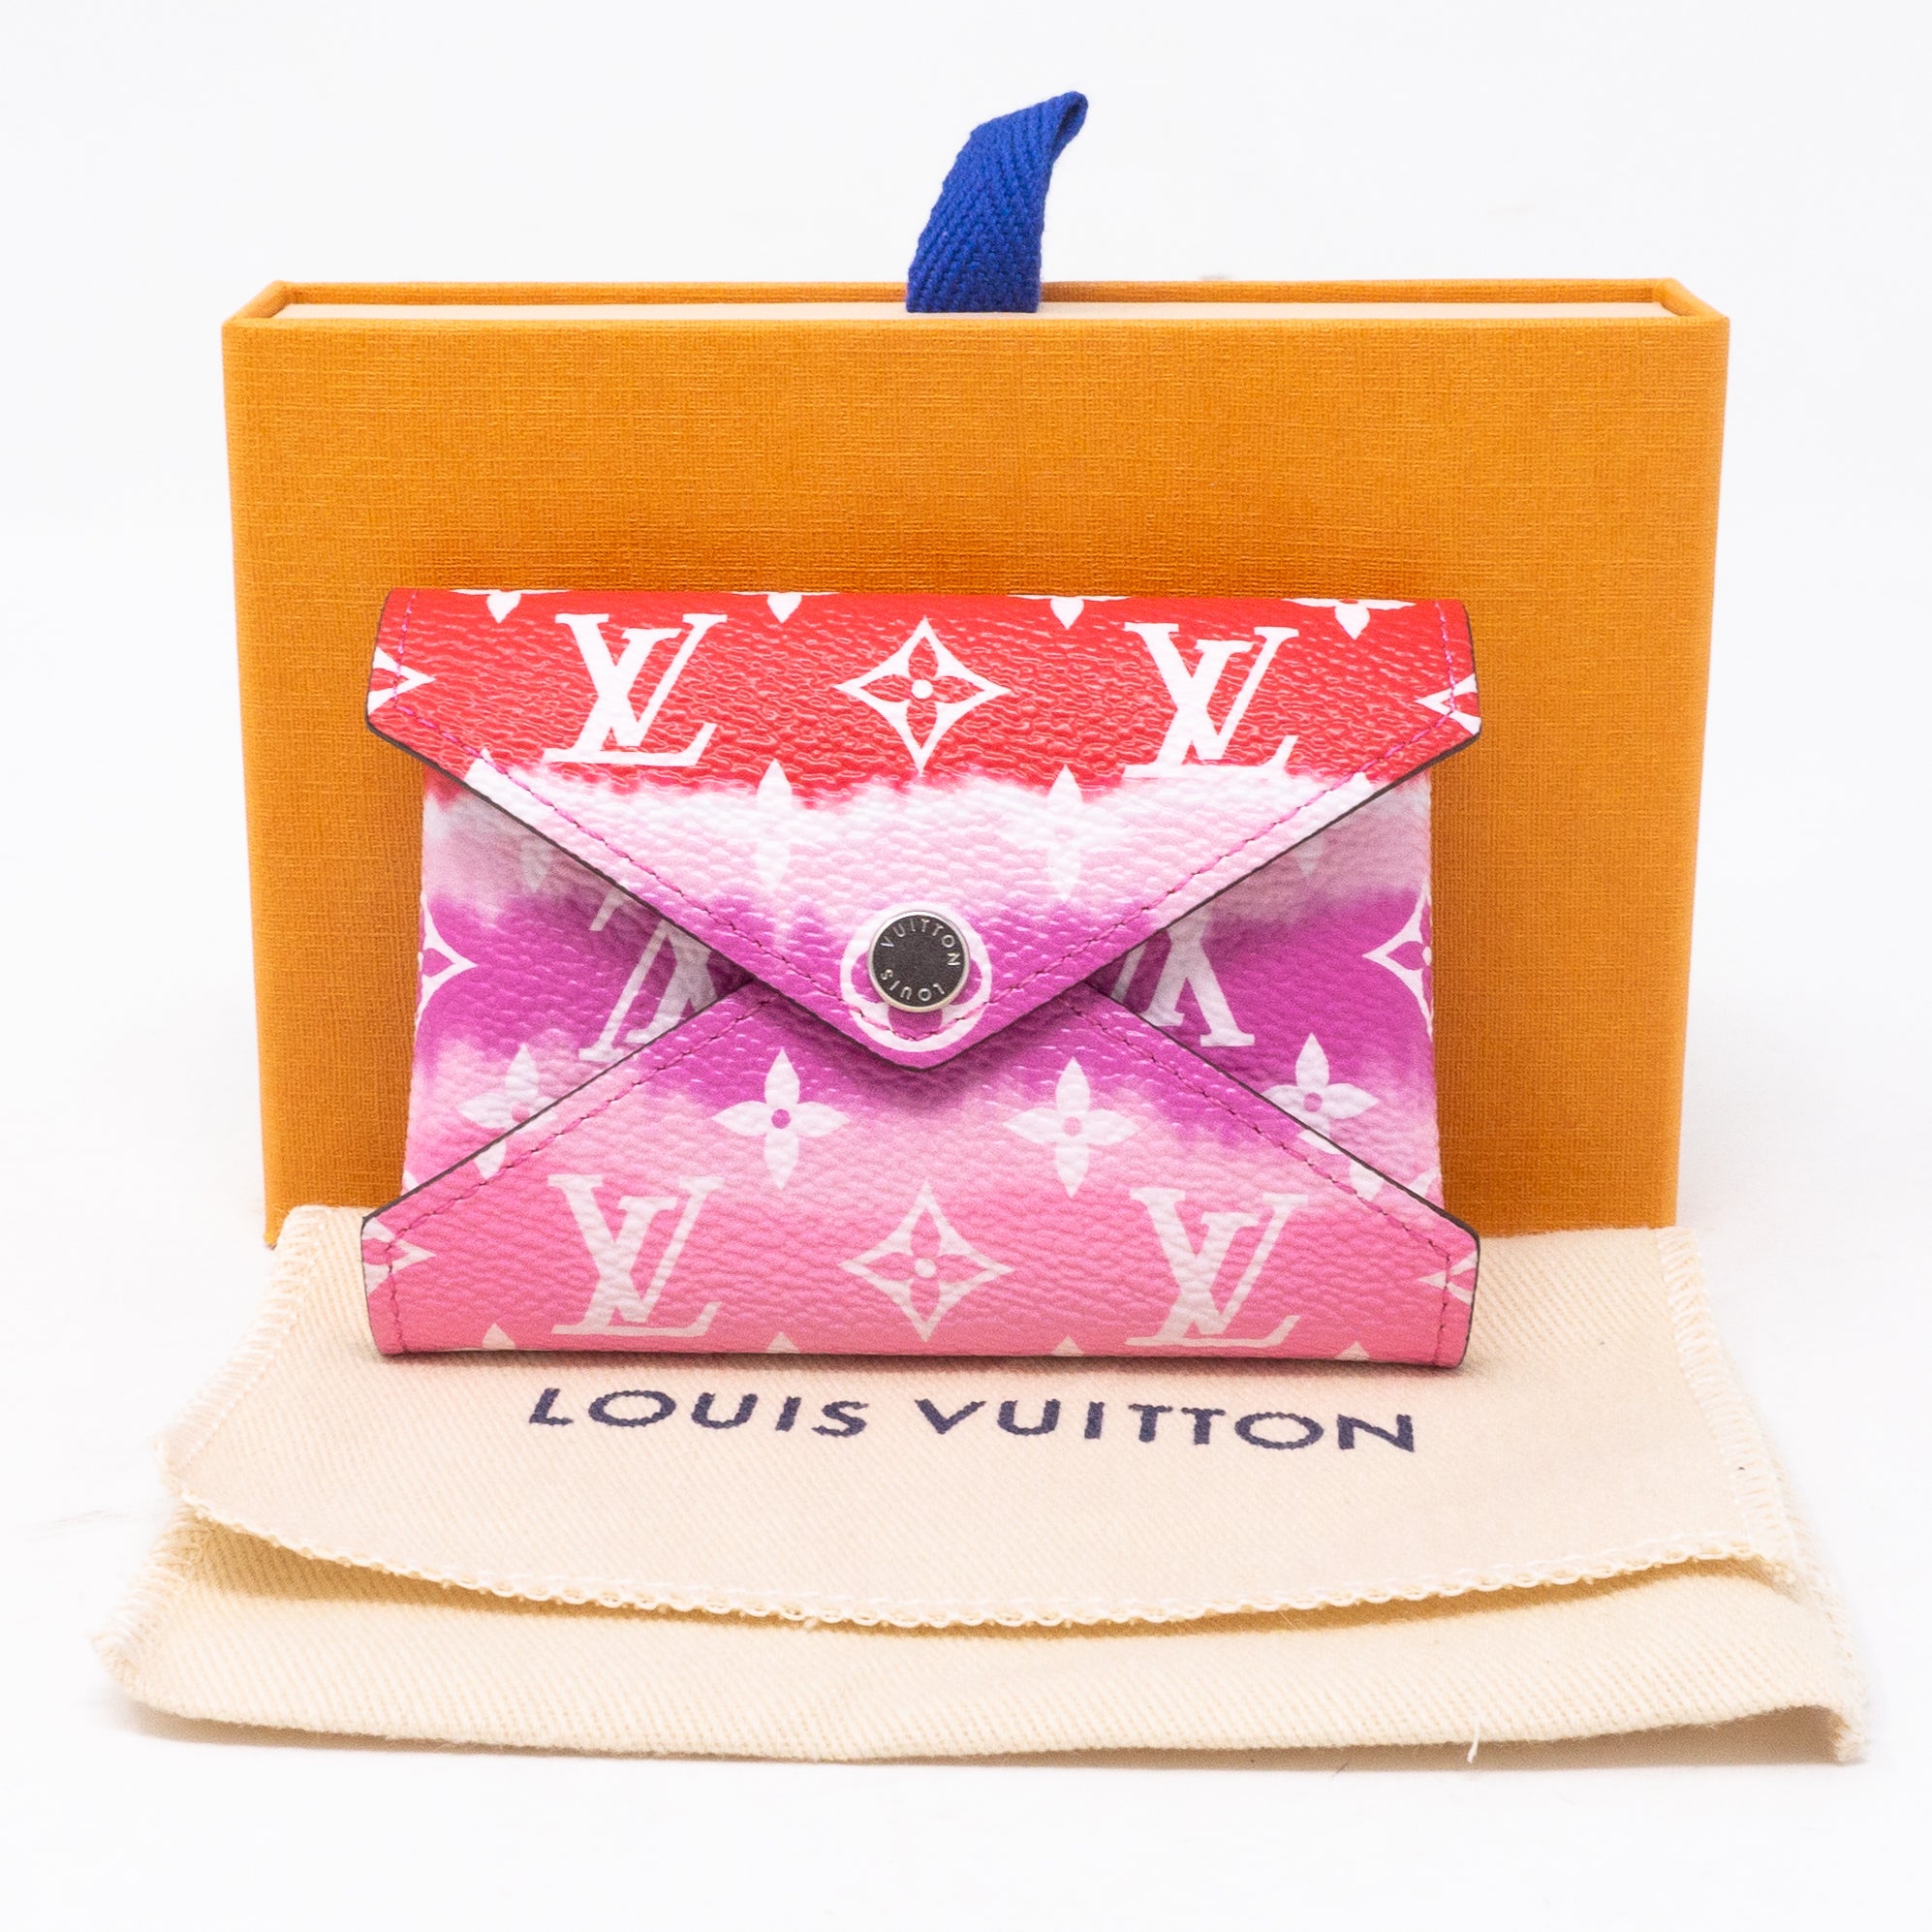 Louis Vuitton Summer 2020 Escale collection Zoe Wallet Unboxing! 